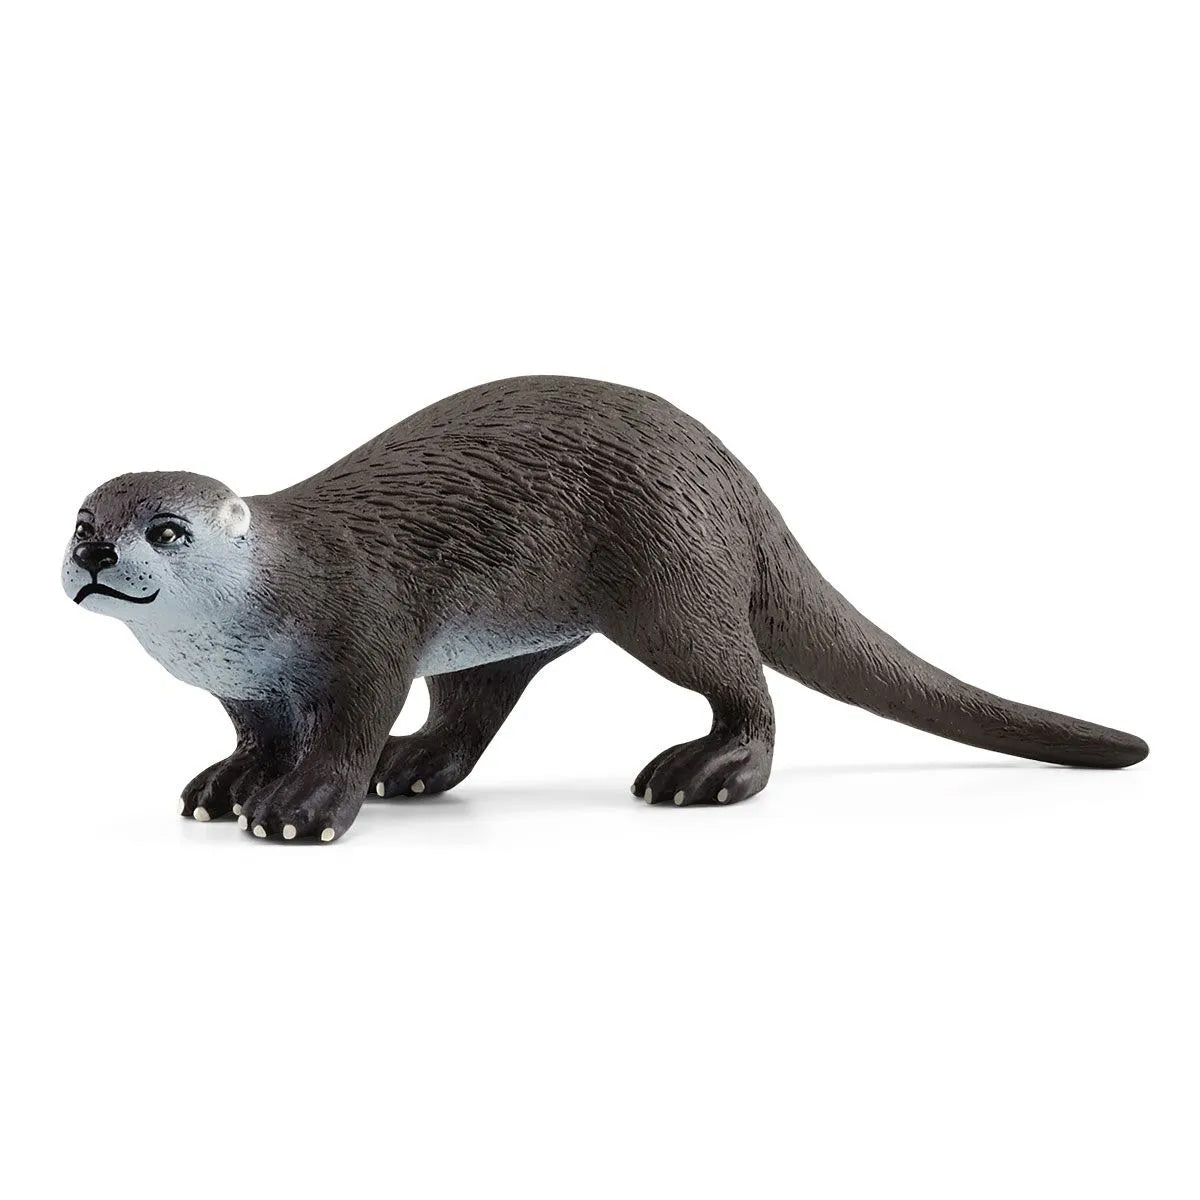 Schleich Wild Life Otter Toy Figurine